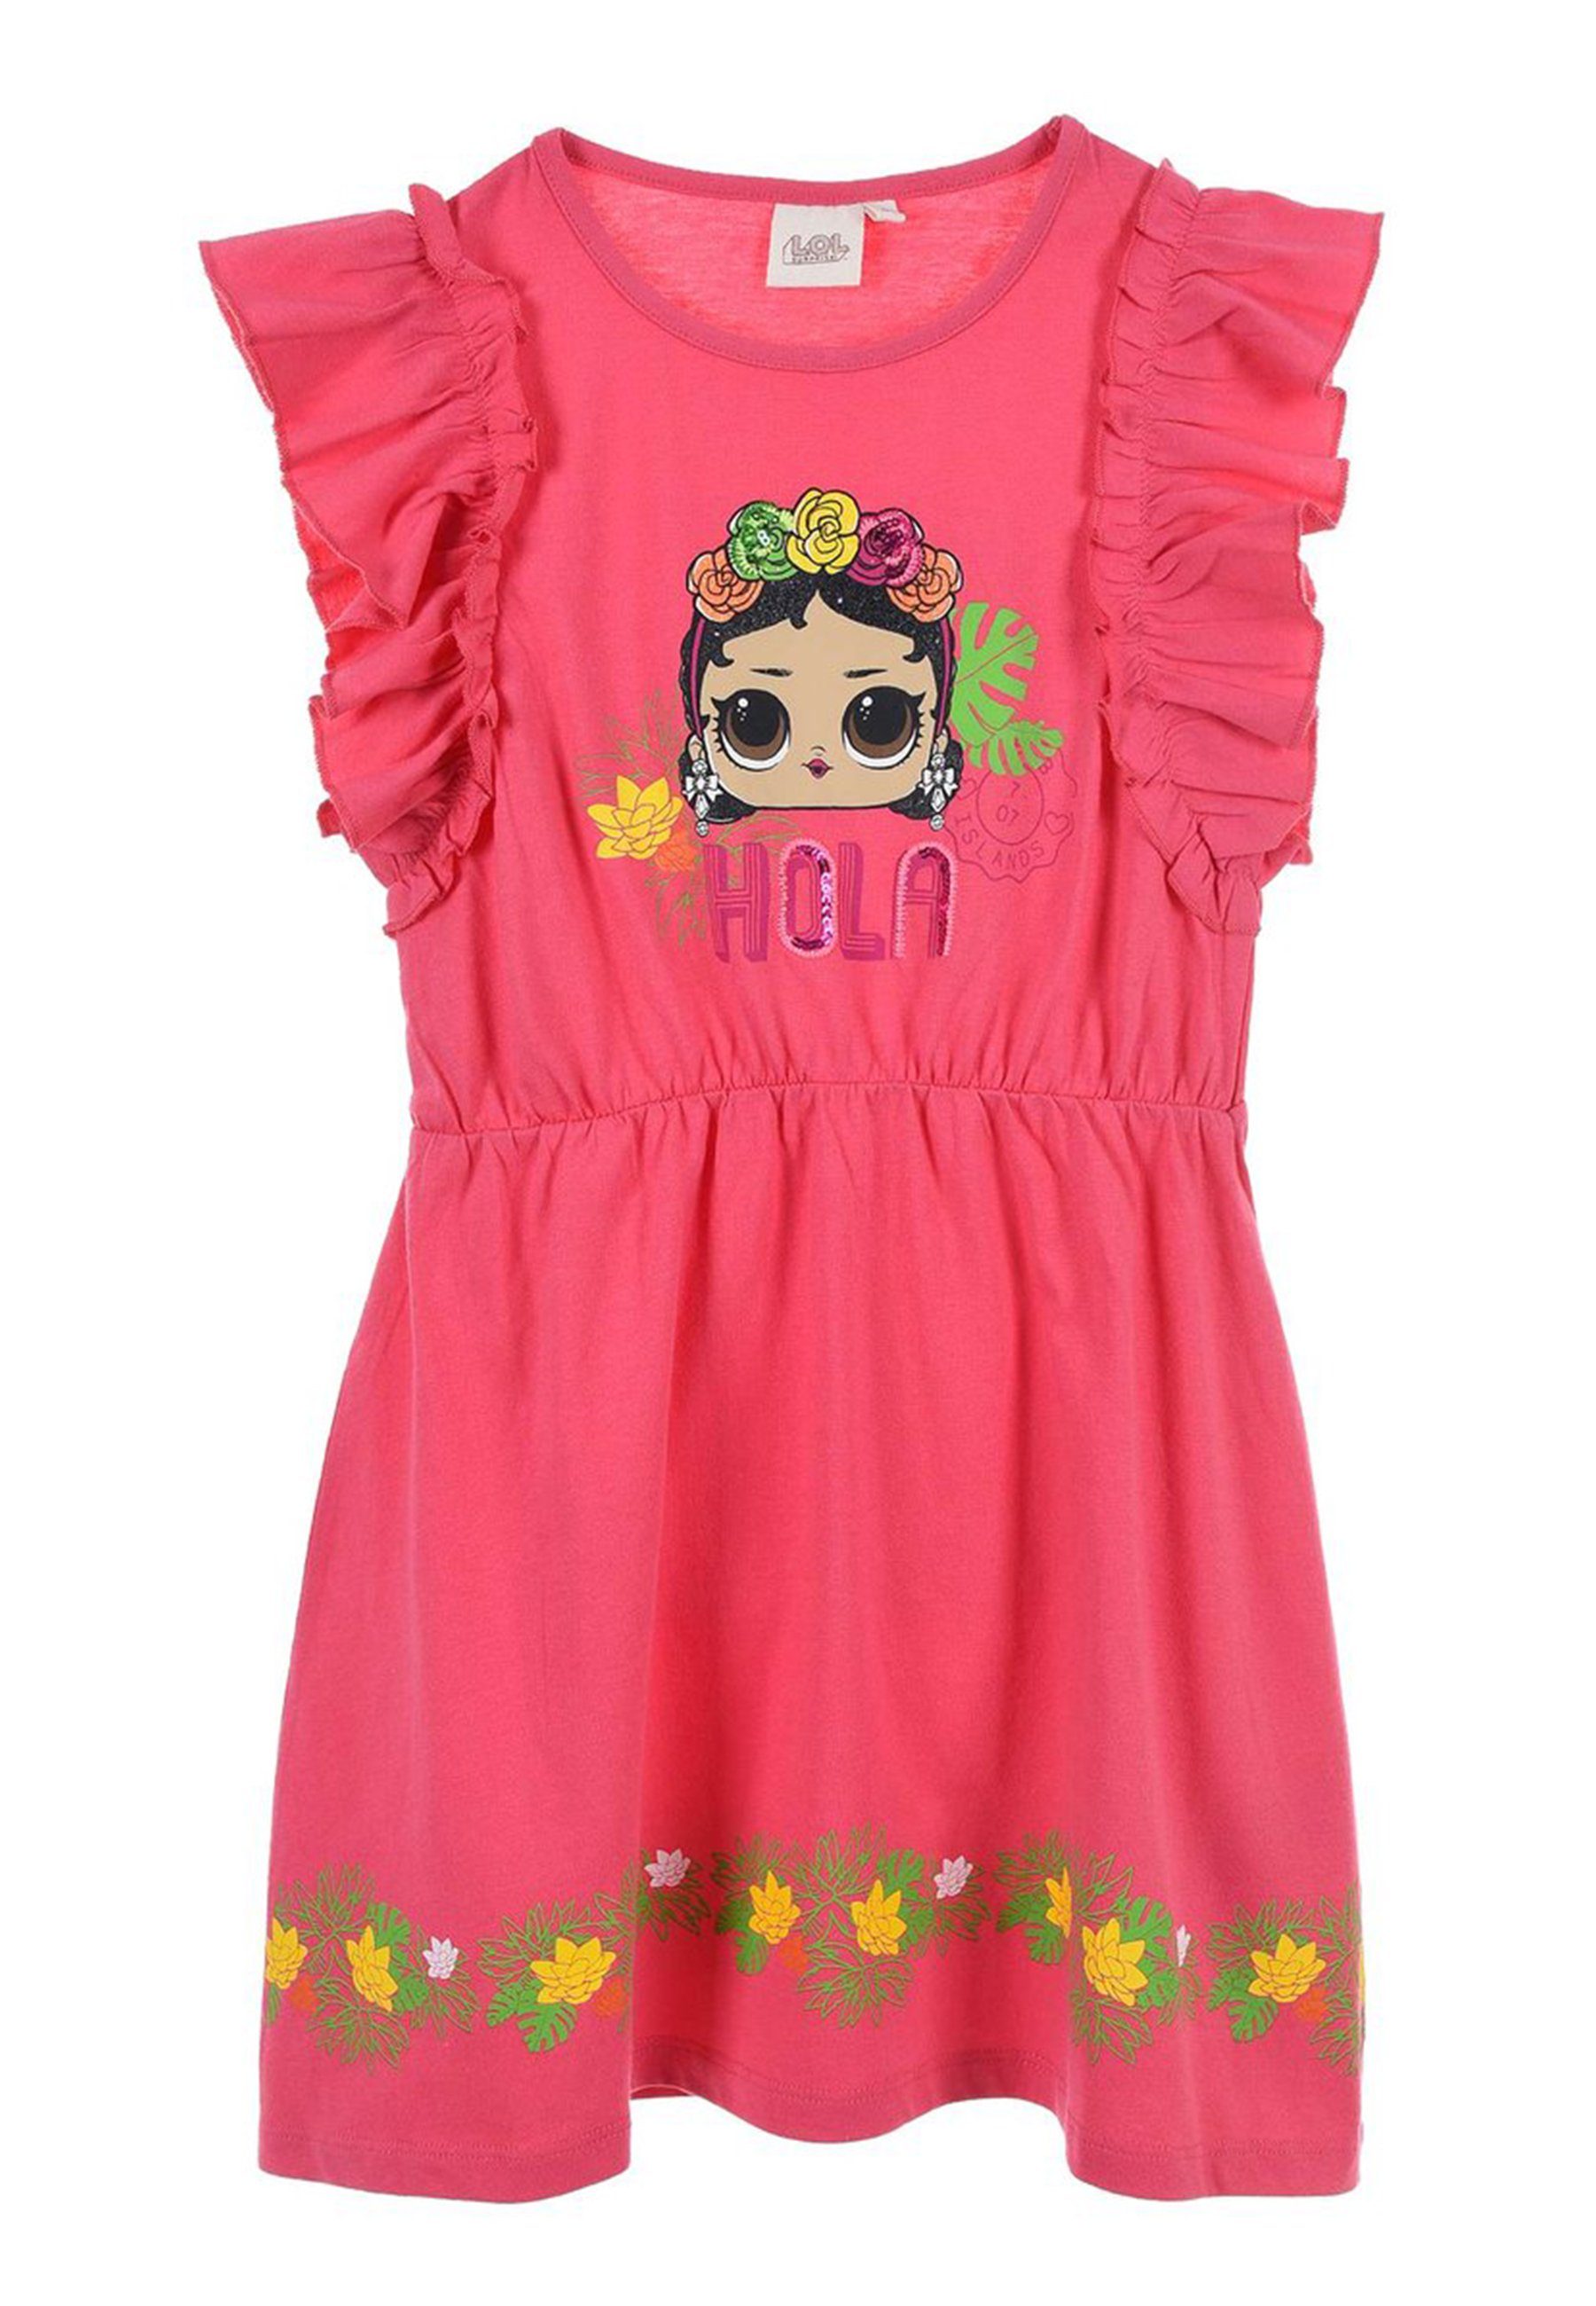 L.O.L. SURPRISE! A-Linien-Kleid Mädchen Sommer-Kleid Kinder Party-Kleid Tüll Pink